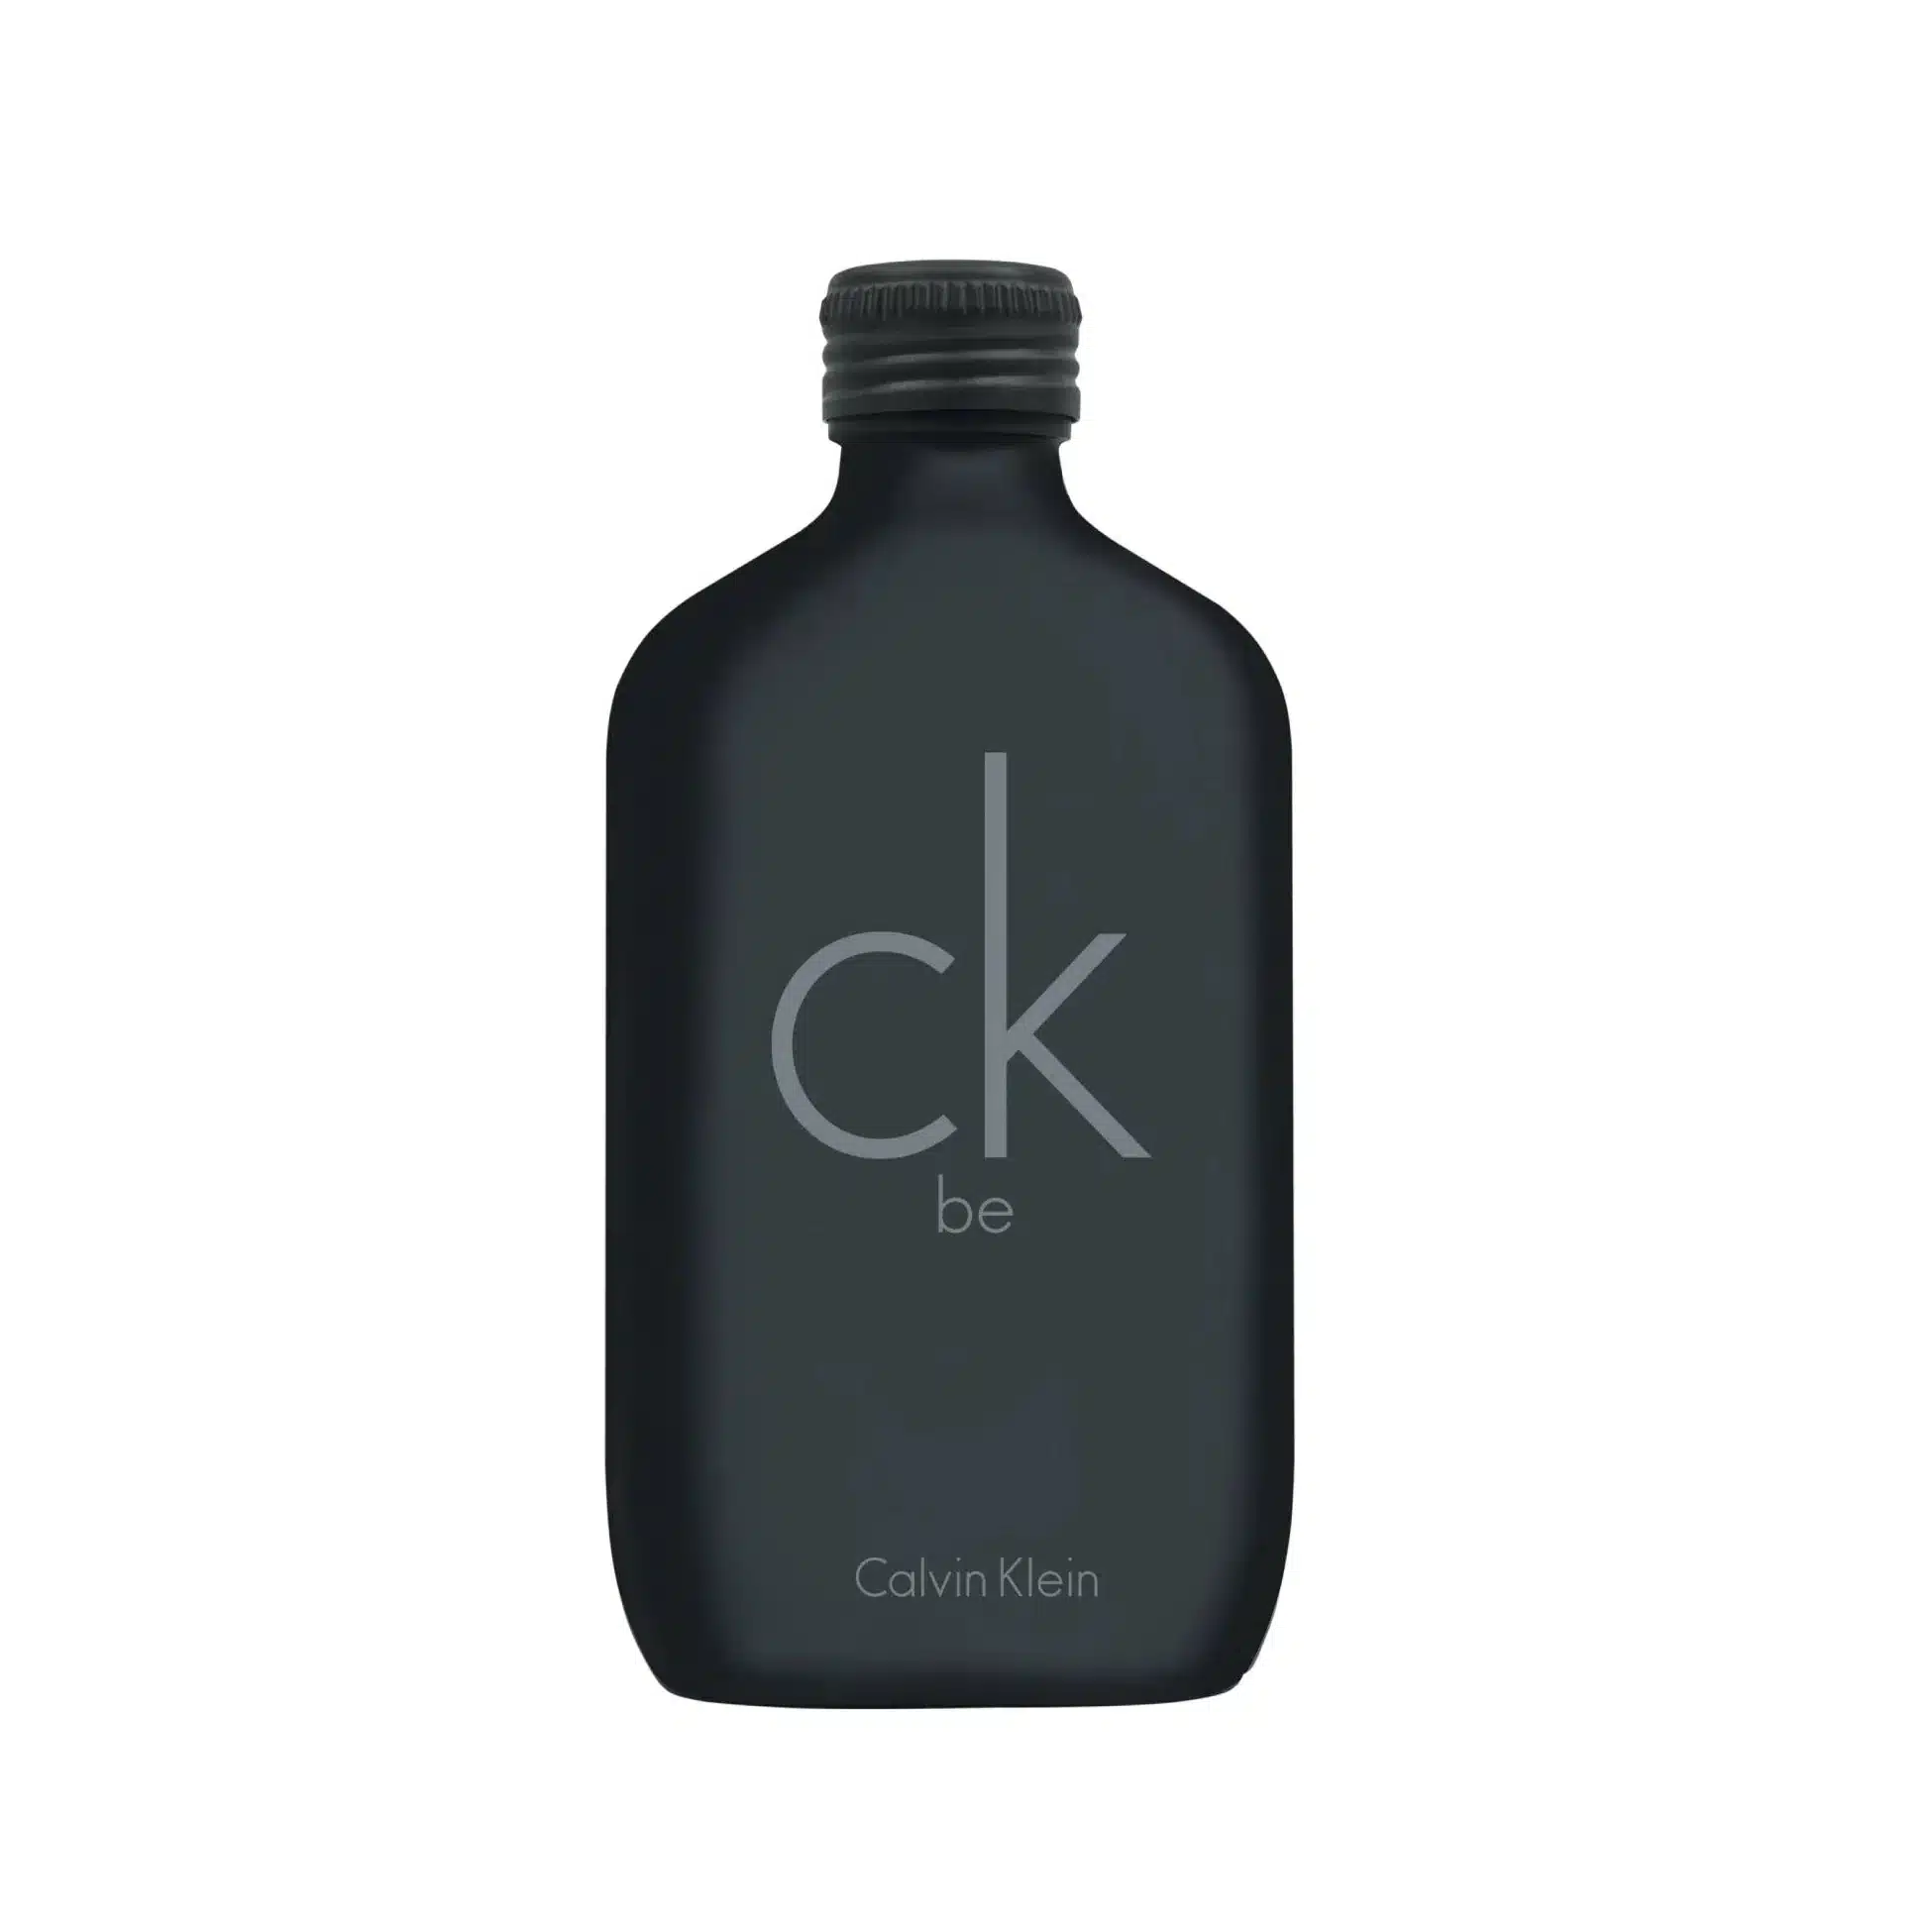 Meilleurs parfums homme Calvin Klein CK Be